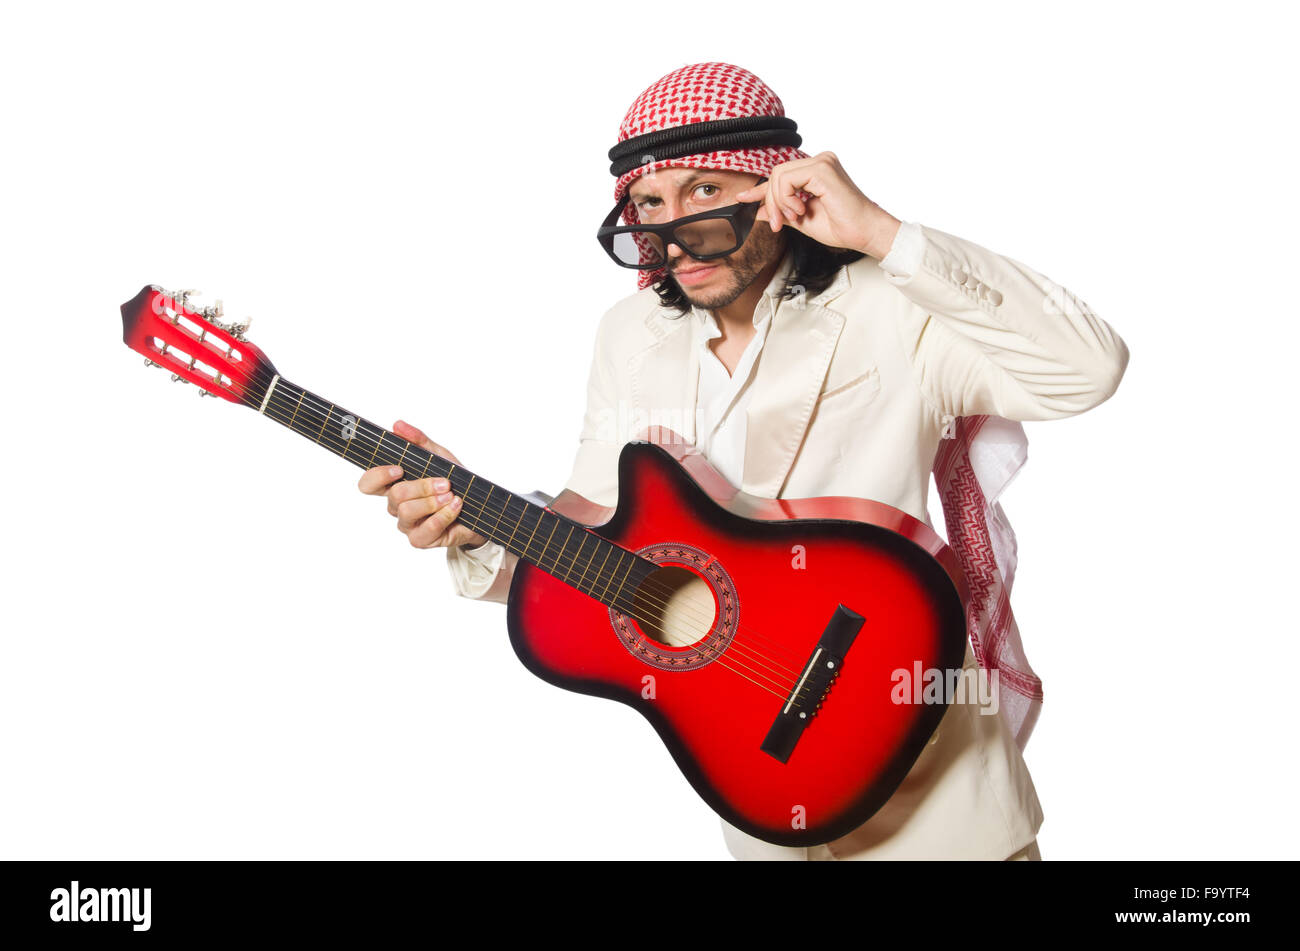 Arabische Mann mit Gitarre auf weiß Stockfotografie - Alamy